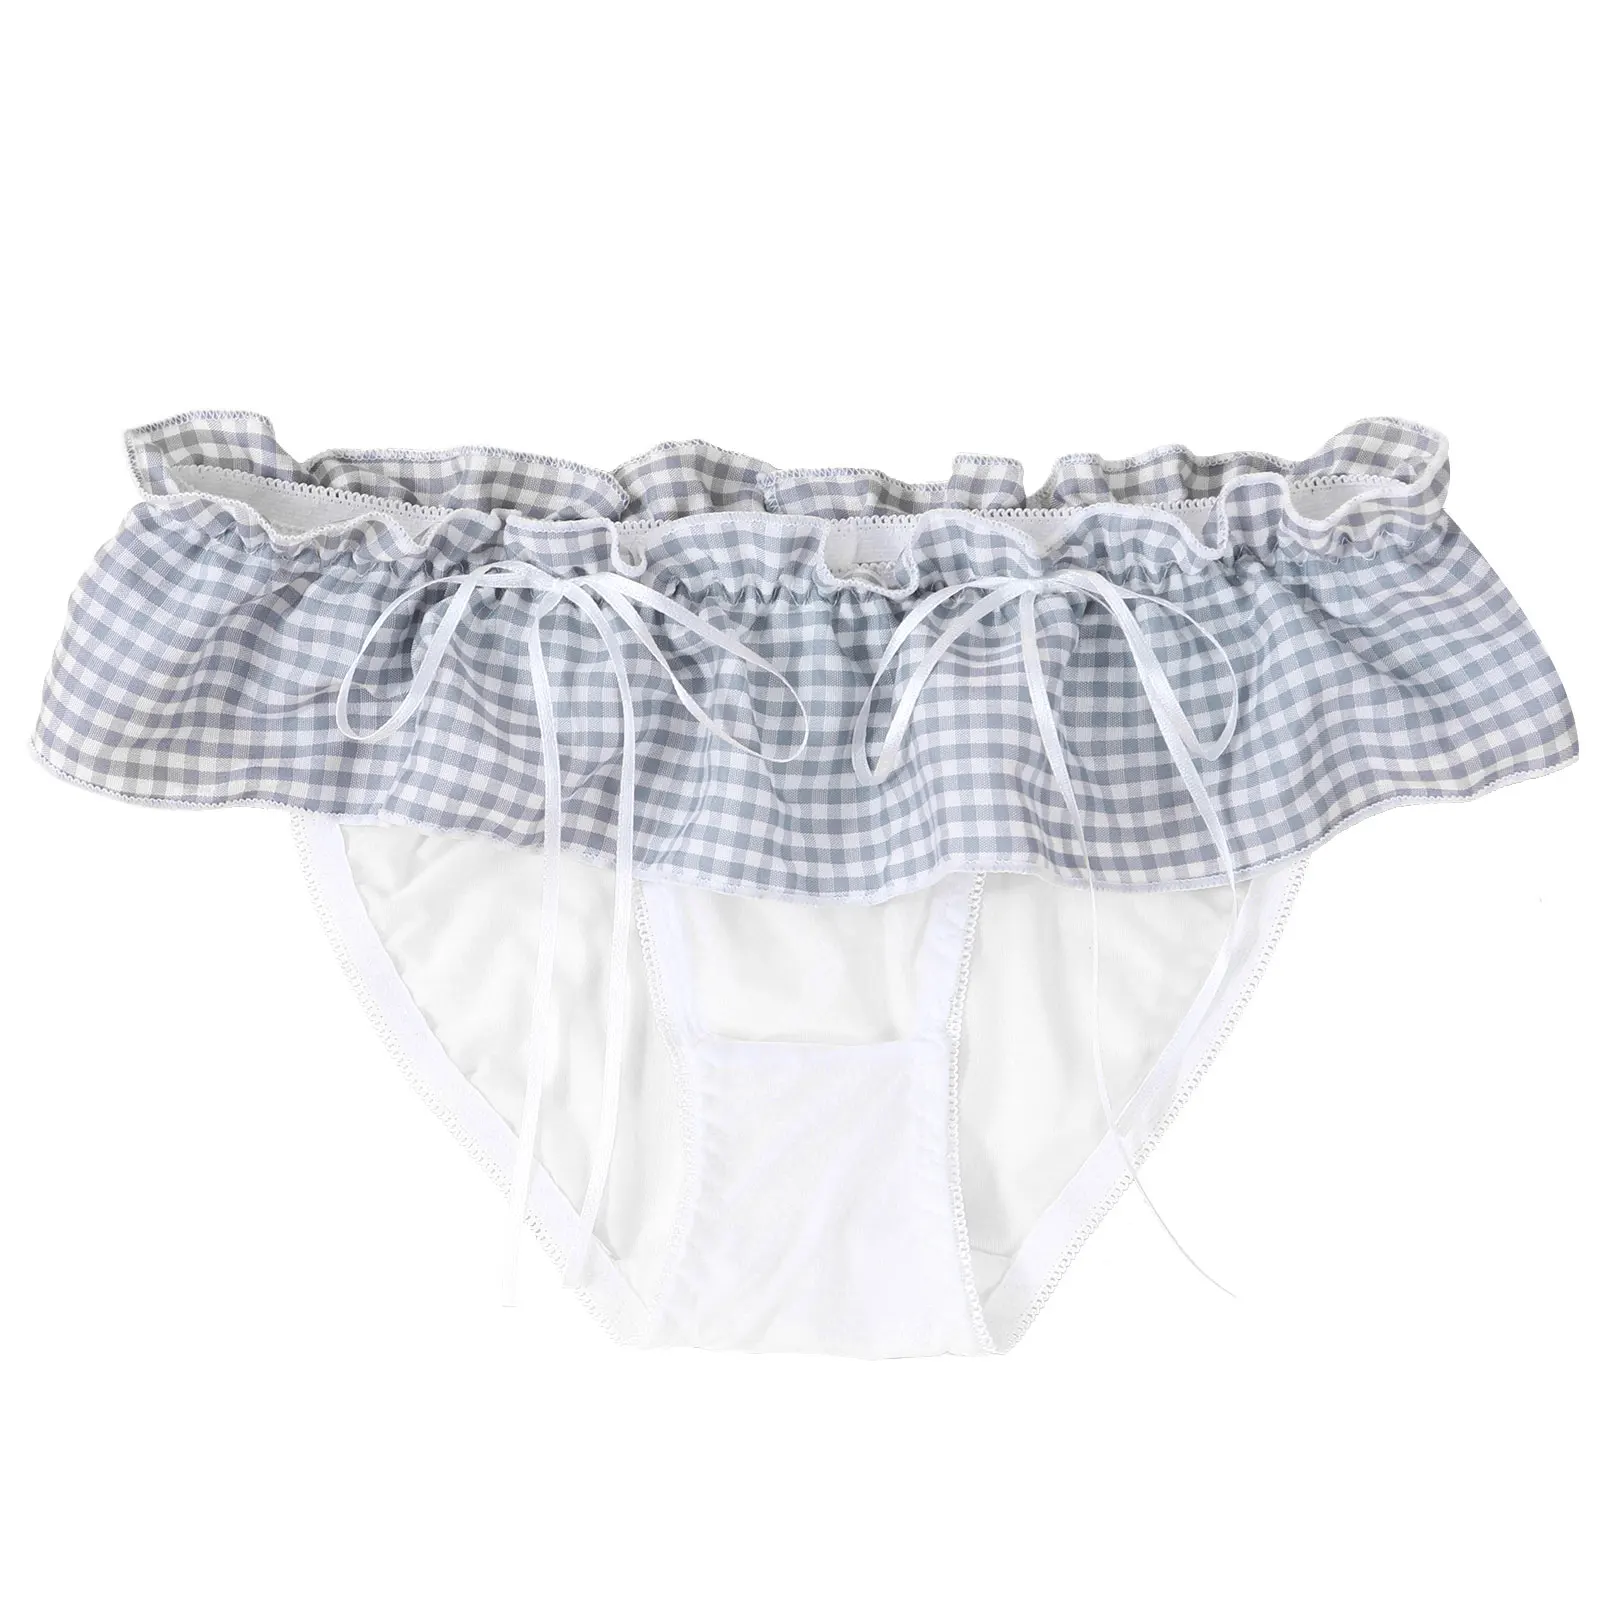 Sissy Male Gay Underwear Men's Panties Ruffle Lace Plaid Print Thongs T-back Panties Low Waist Bowknot Lingerie Underpants men in briefs